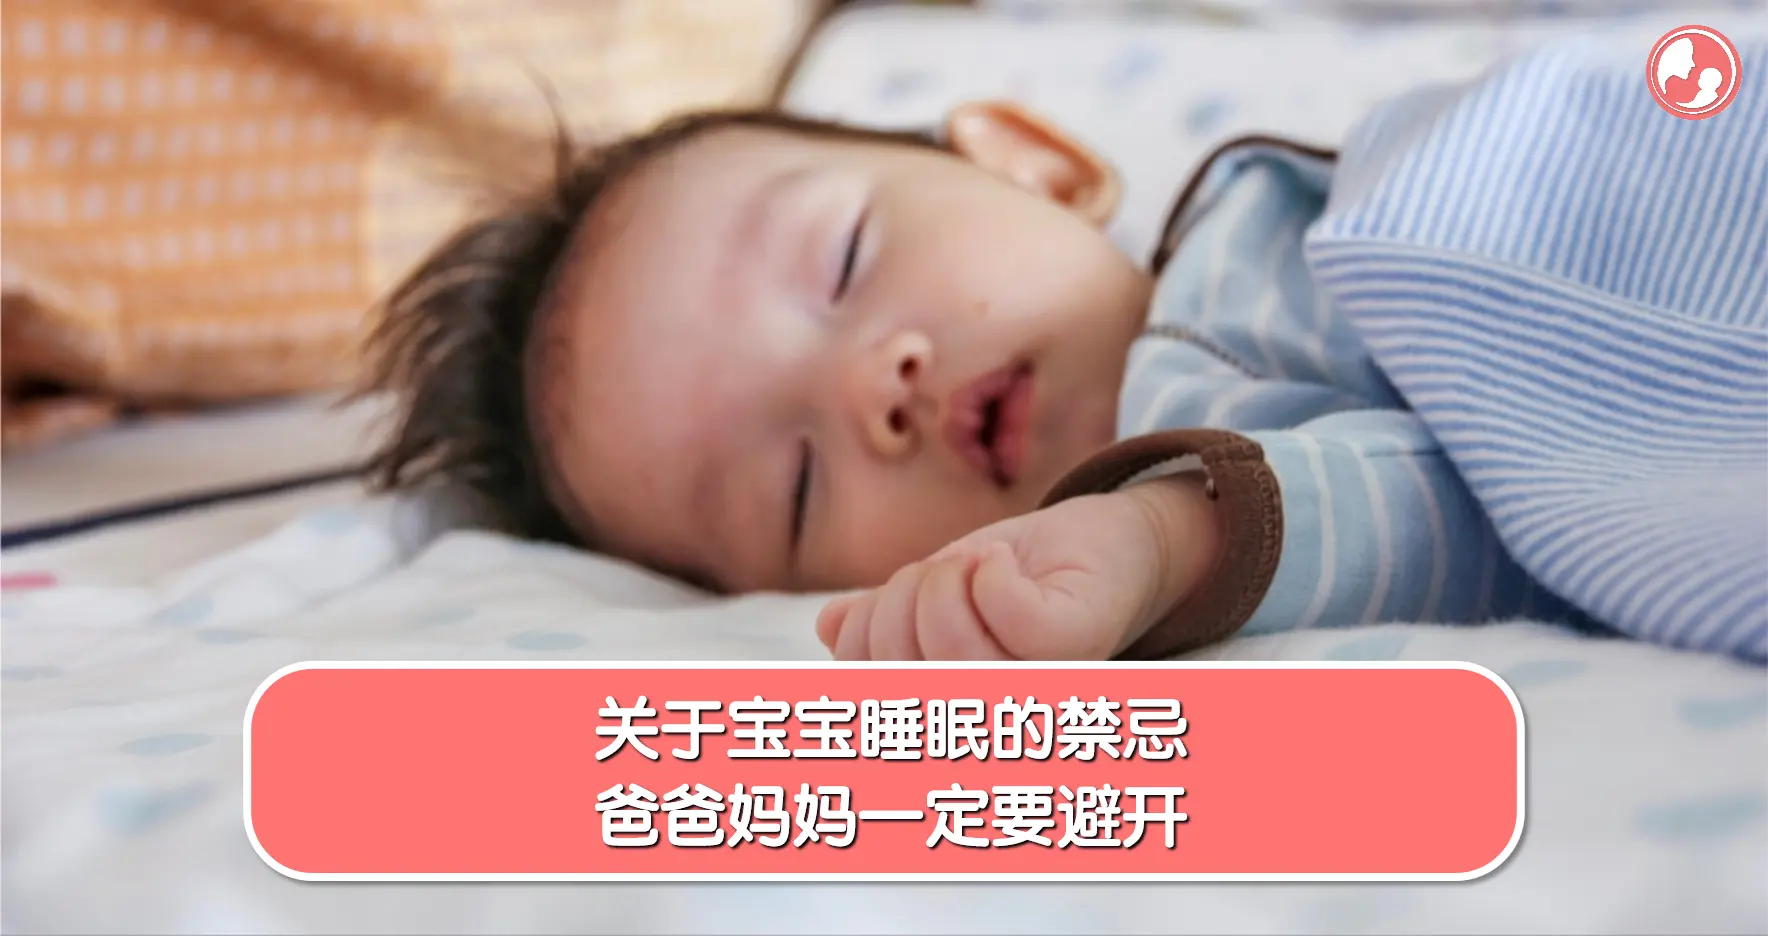 【宝宝睡眠】关于宝宝睡眠的禁忌，爸爸妈妈一定要避开 -MamaClub